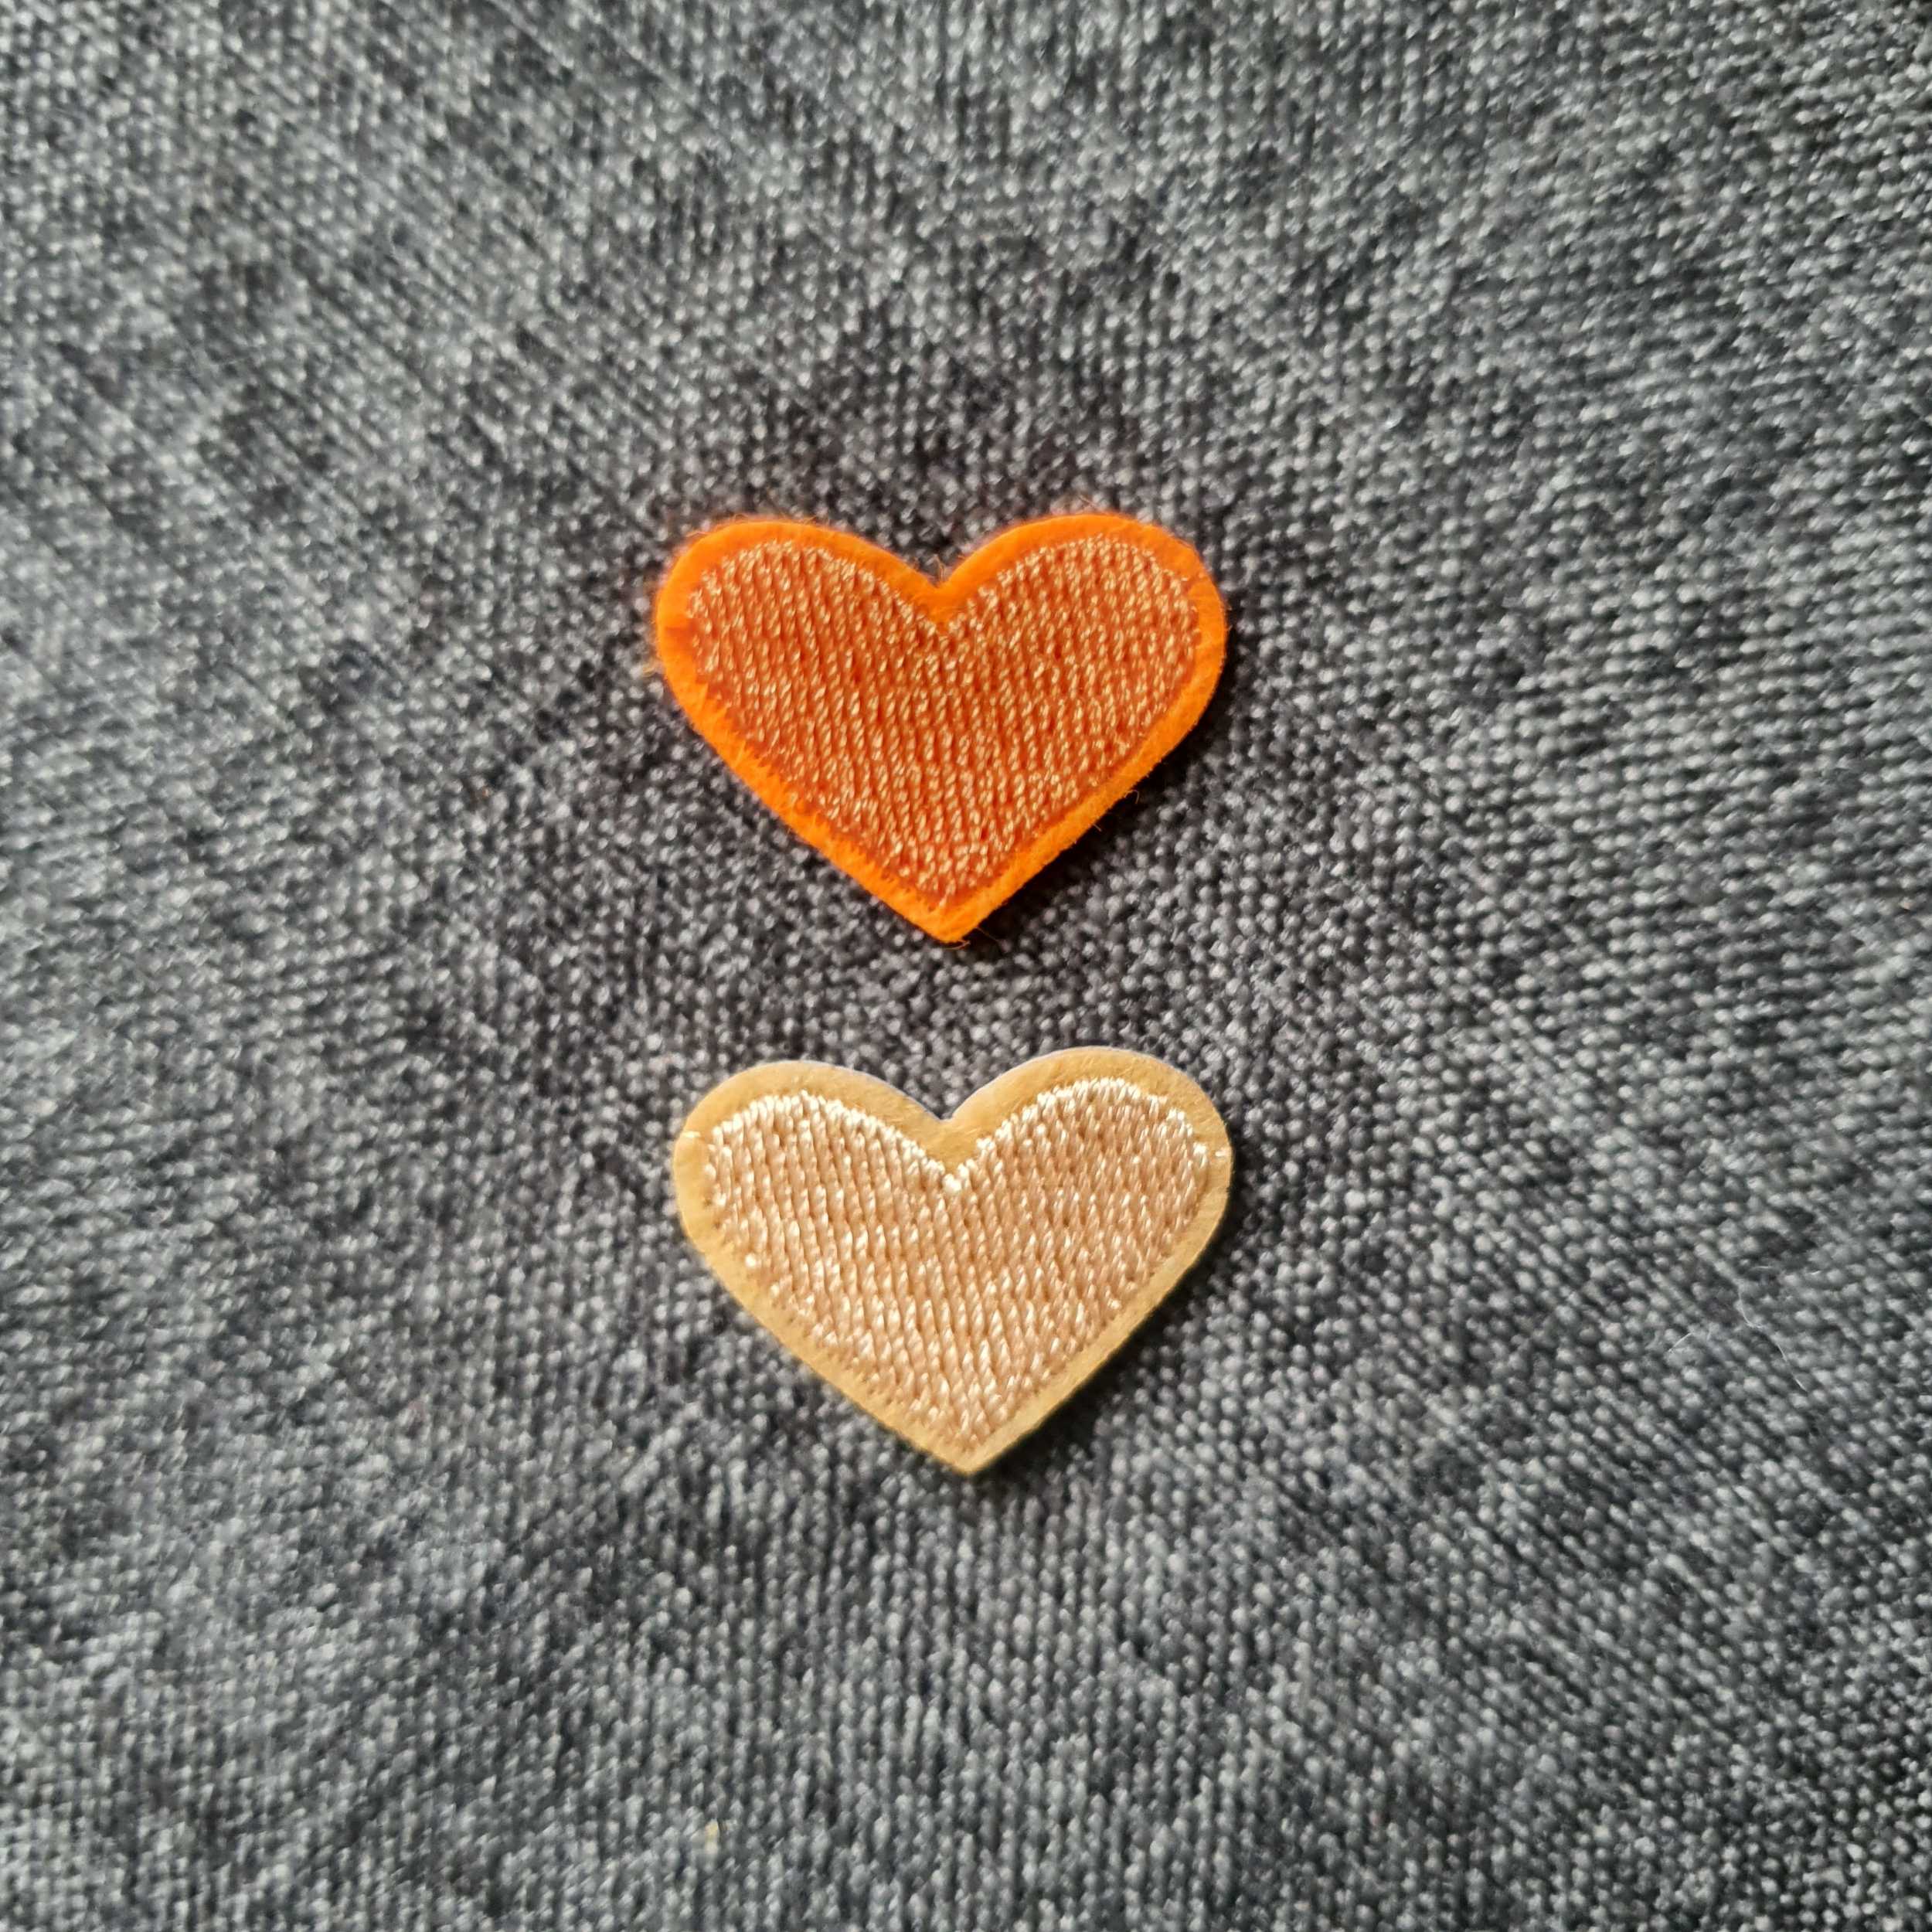 Patch thermocollant duo de petits cœurs colorés orange et beige